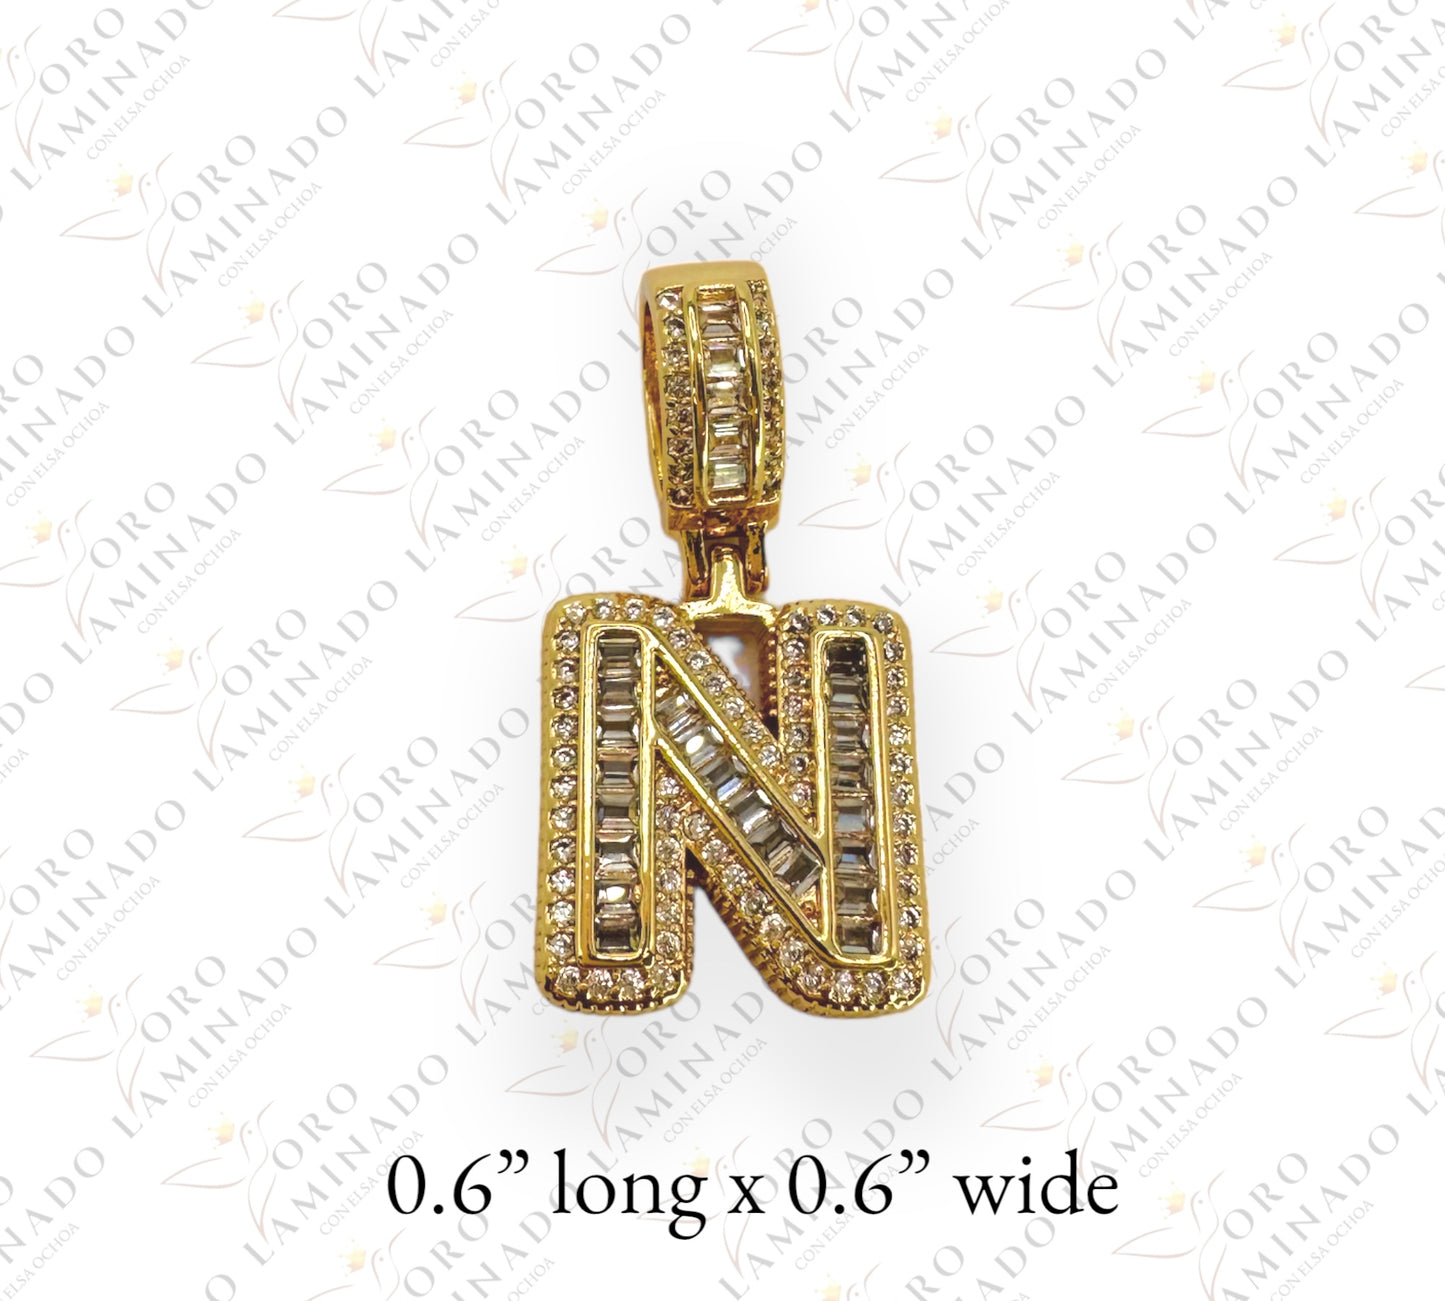 Initial pendant "N" G259